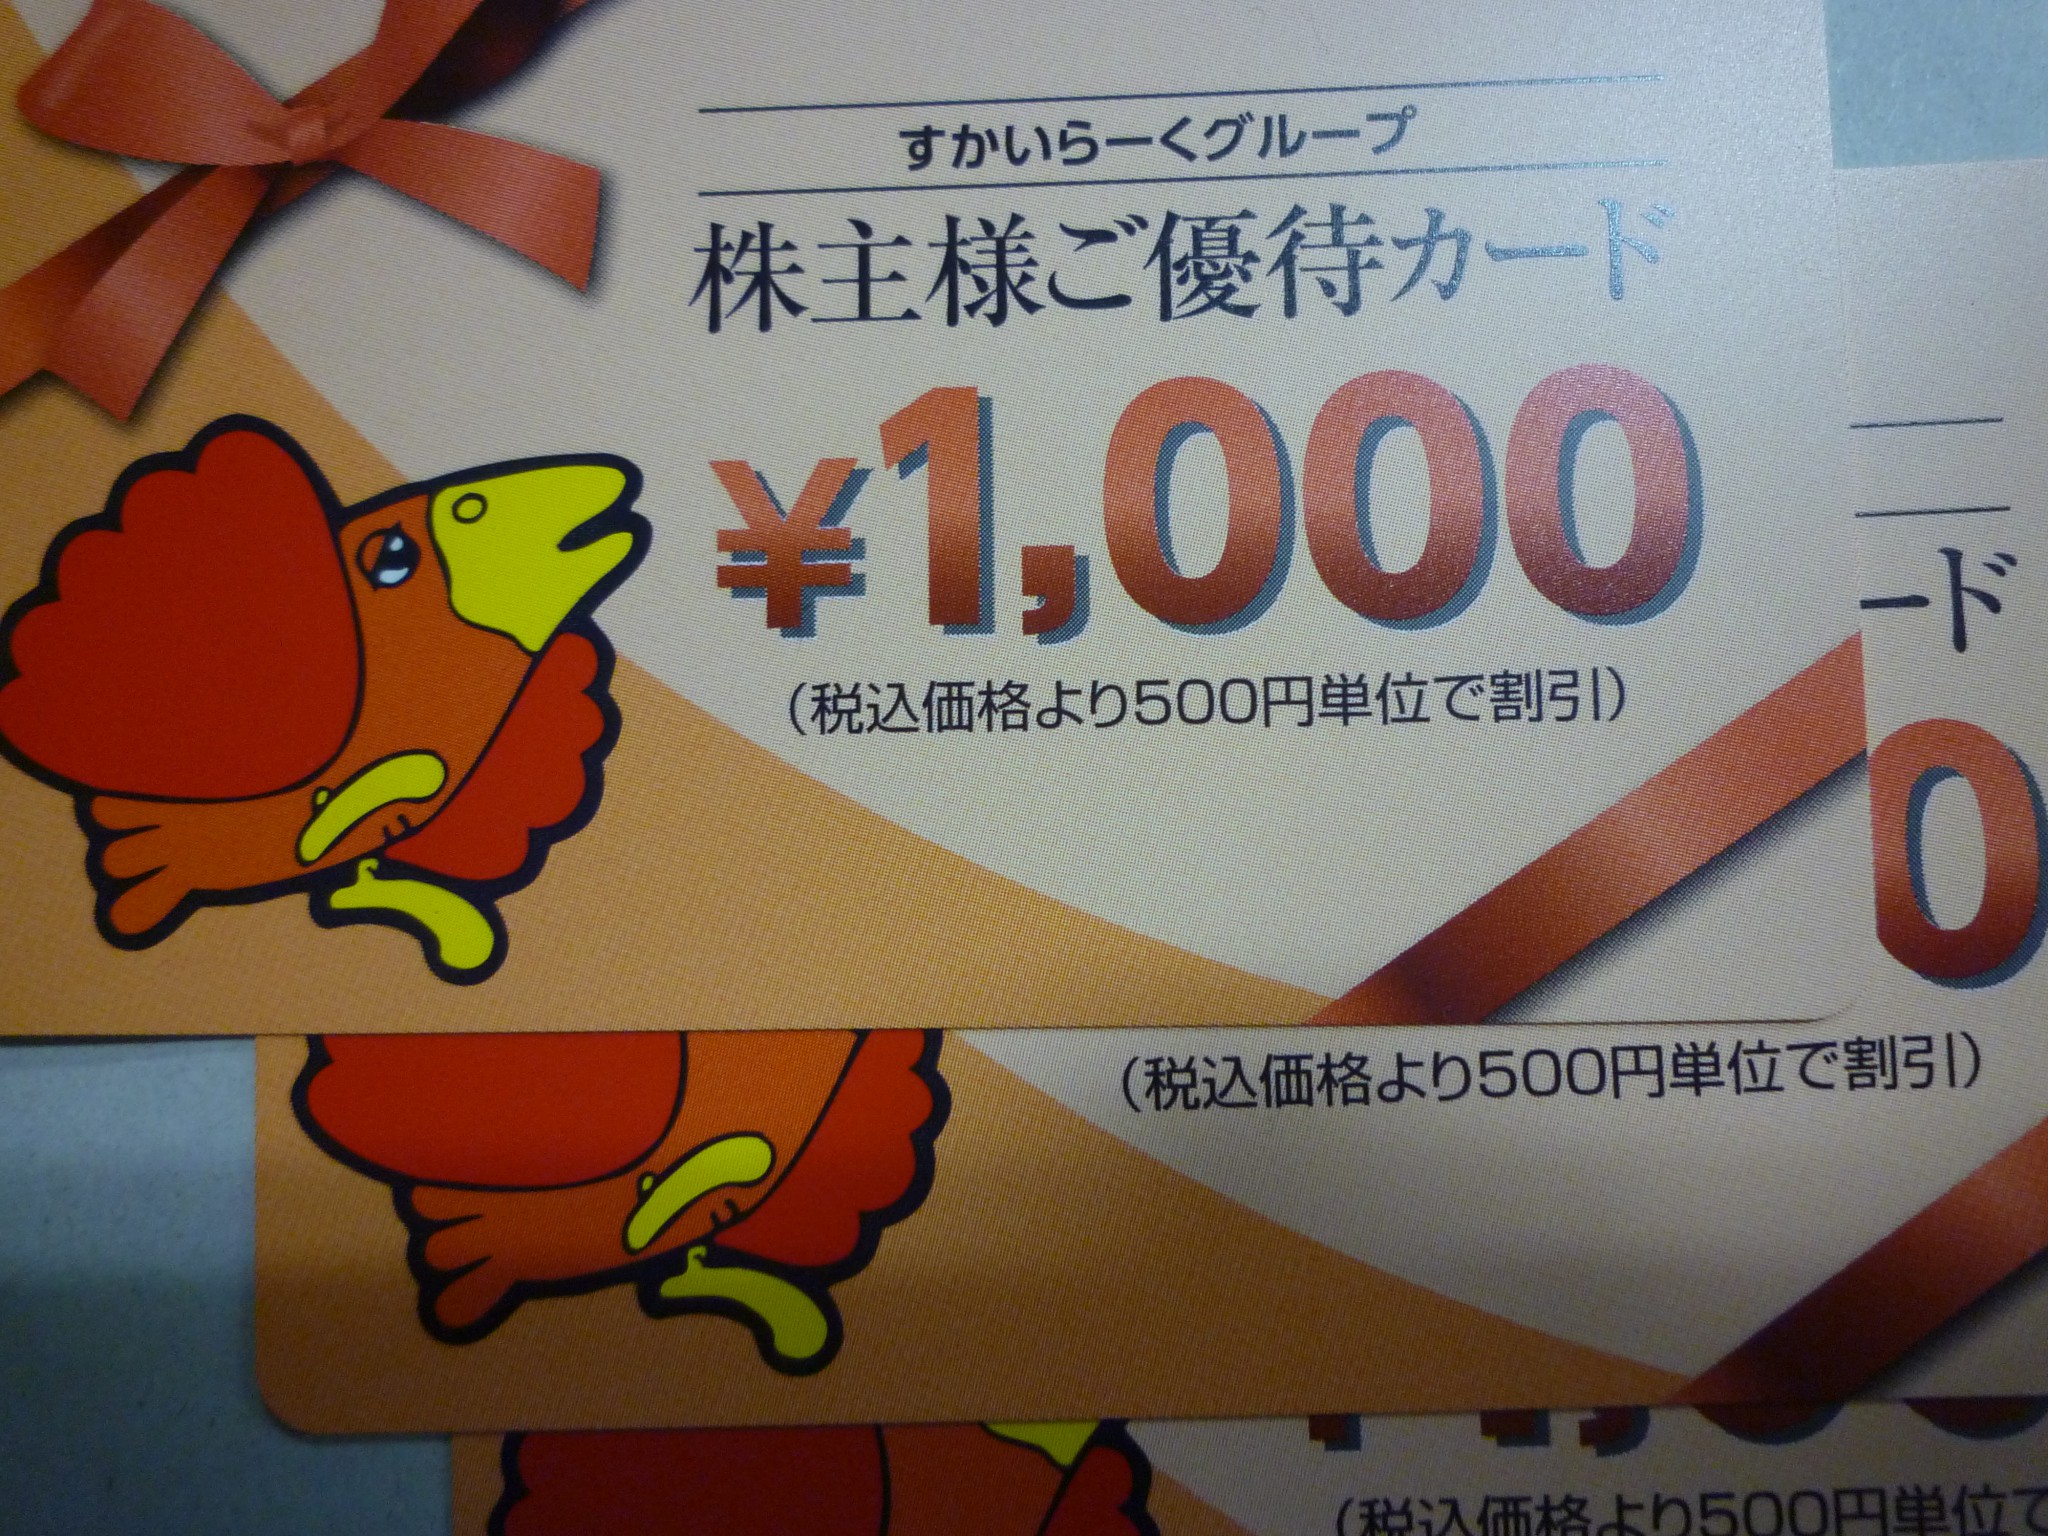 JR - 5万円分 JR九州グループ株主優待券の+stbp.com.br